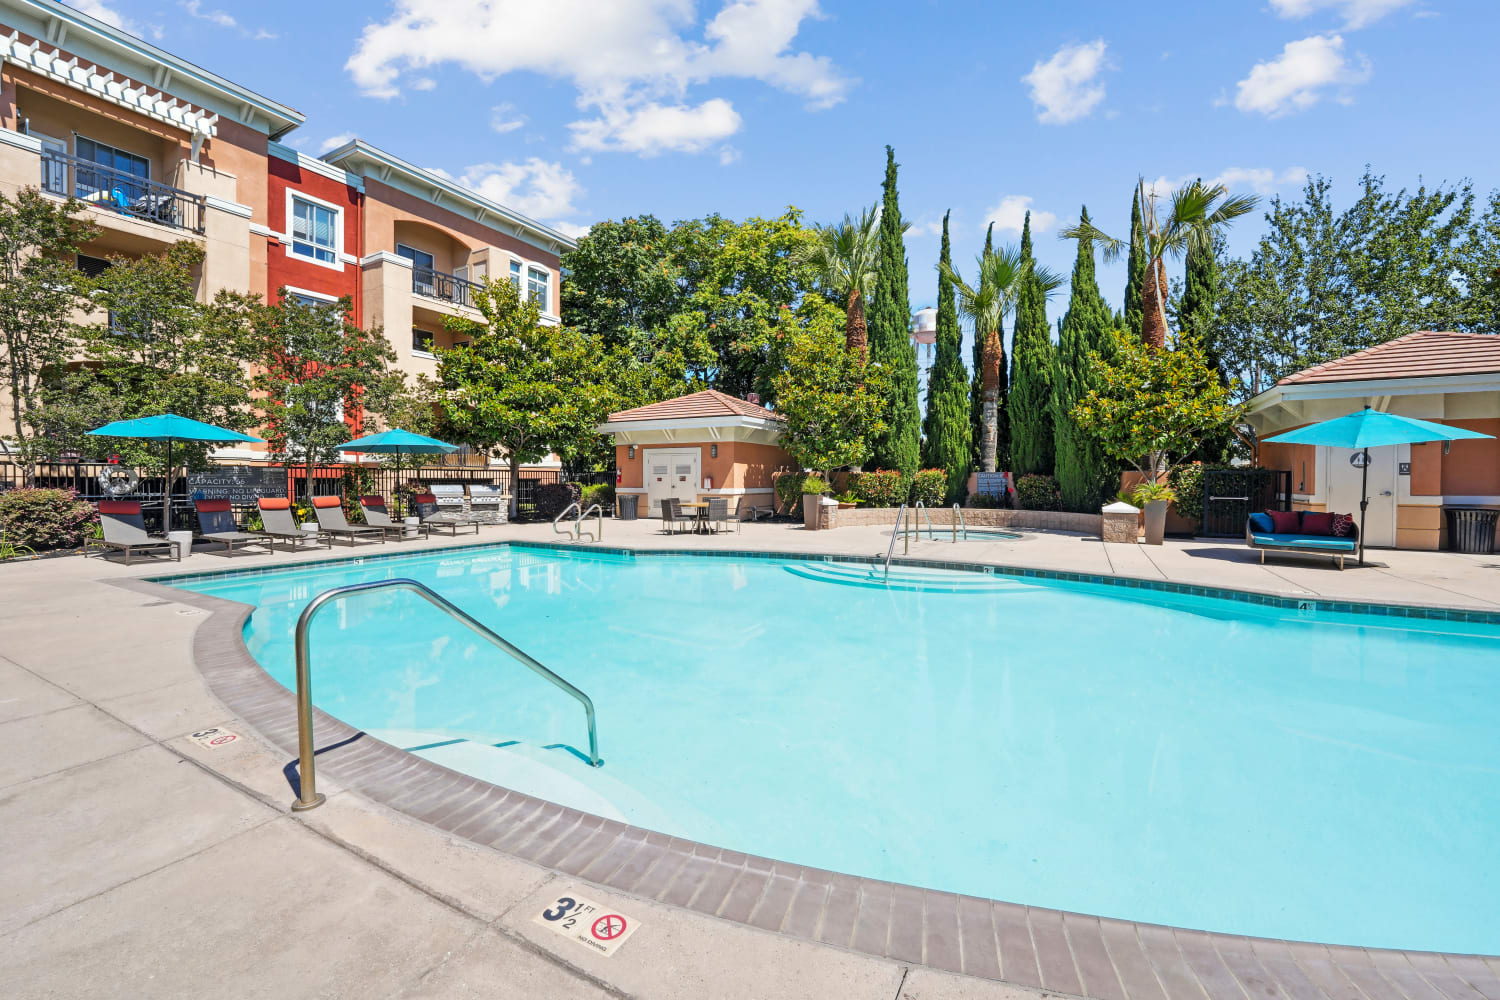 Pool at Villa Del Sol in Sunnyvale, California